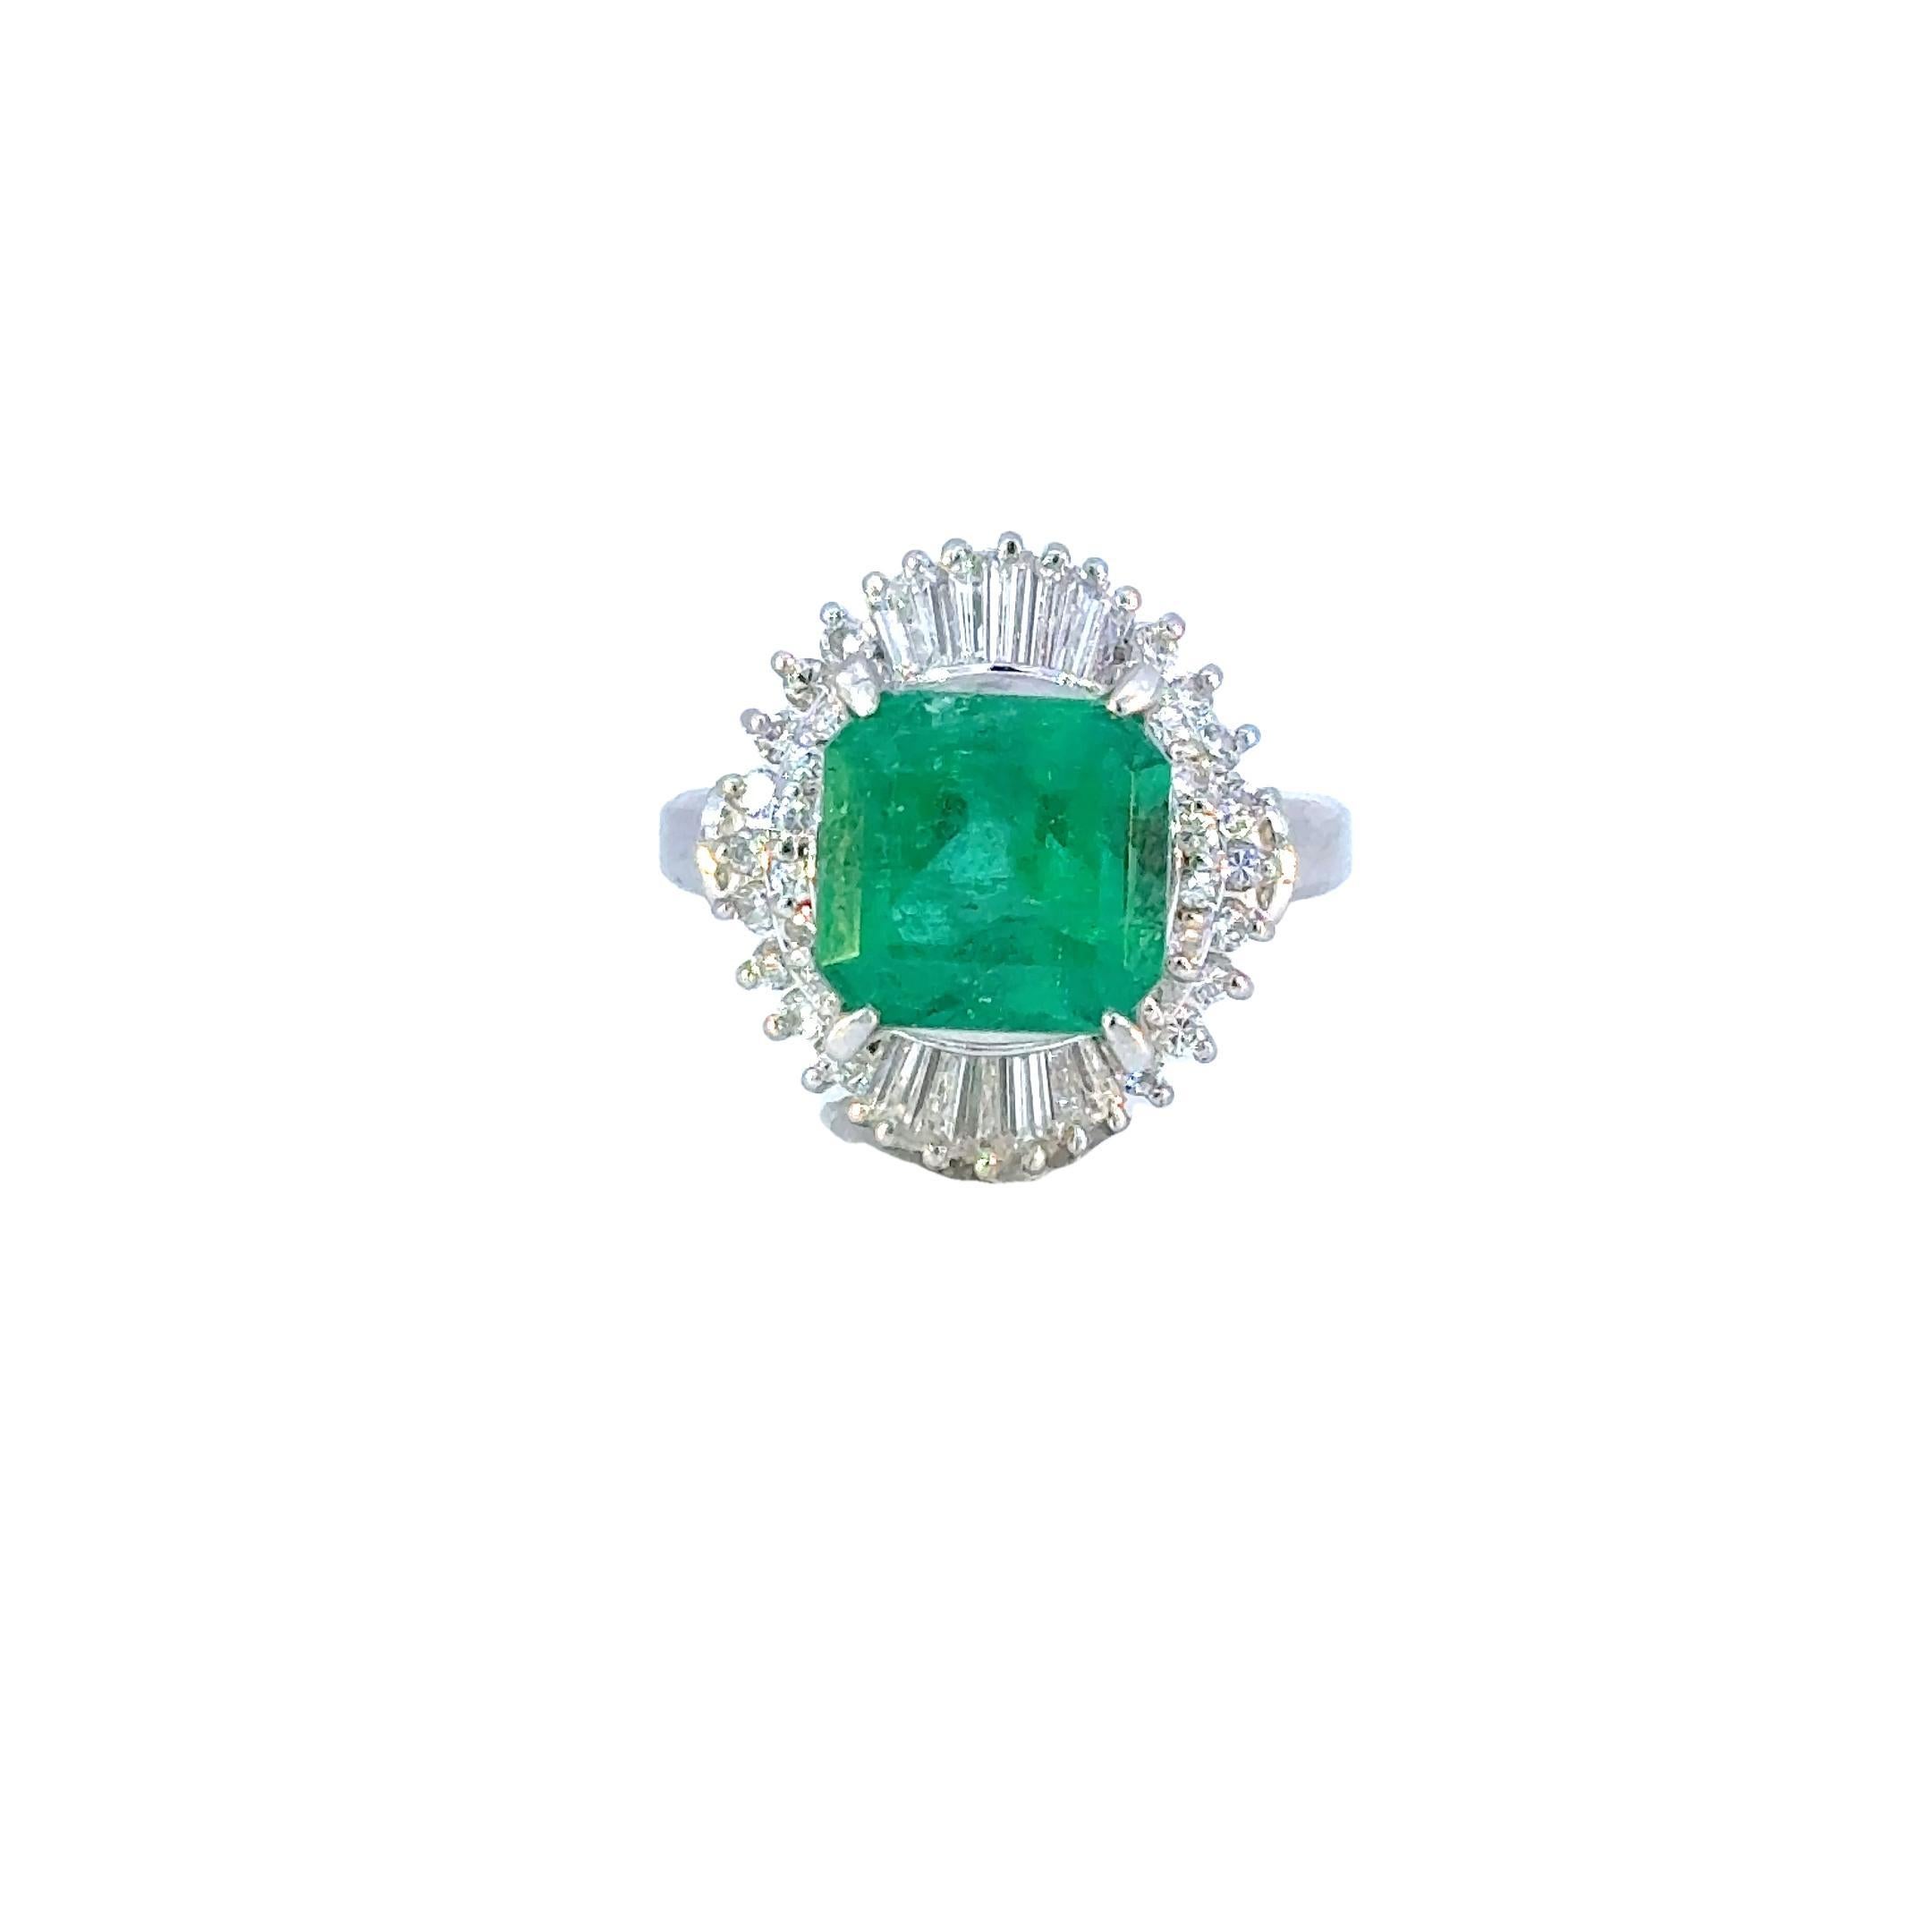 Dieser exquisite 3,32-Karat-Smaragd ist ein wahrhaft fesselnder Edelstein. Dieser Edelstein stammt aus den berühmten kolumbianischen Smaragdminen und zeichnet sich durch die hervorragende Qualität und den satten grünen Farbton aus, für den